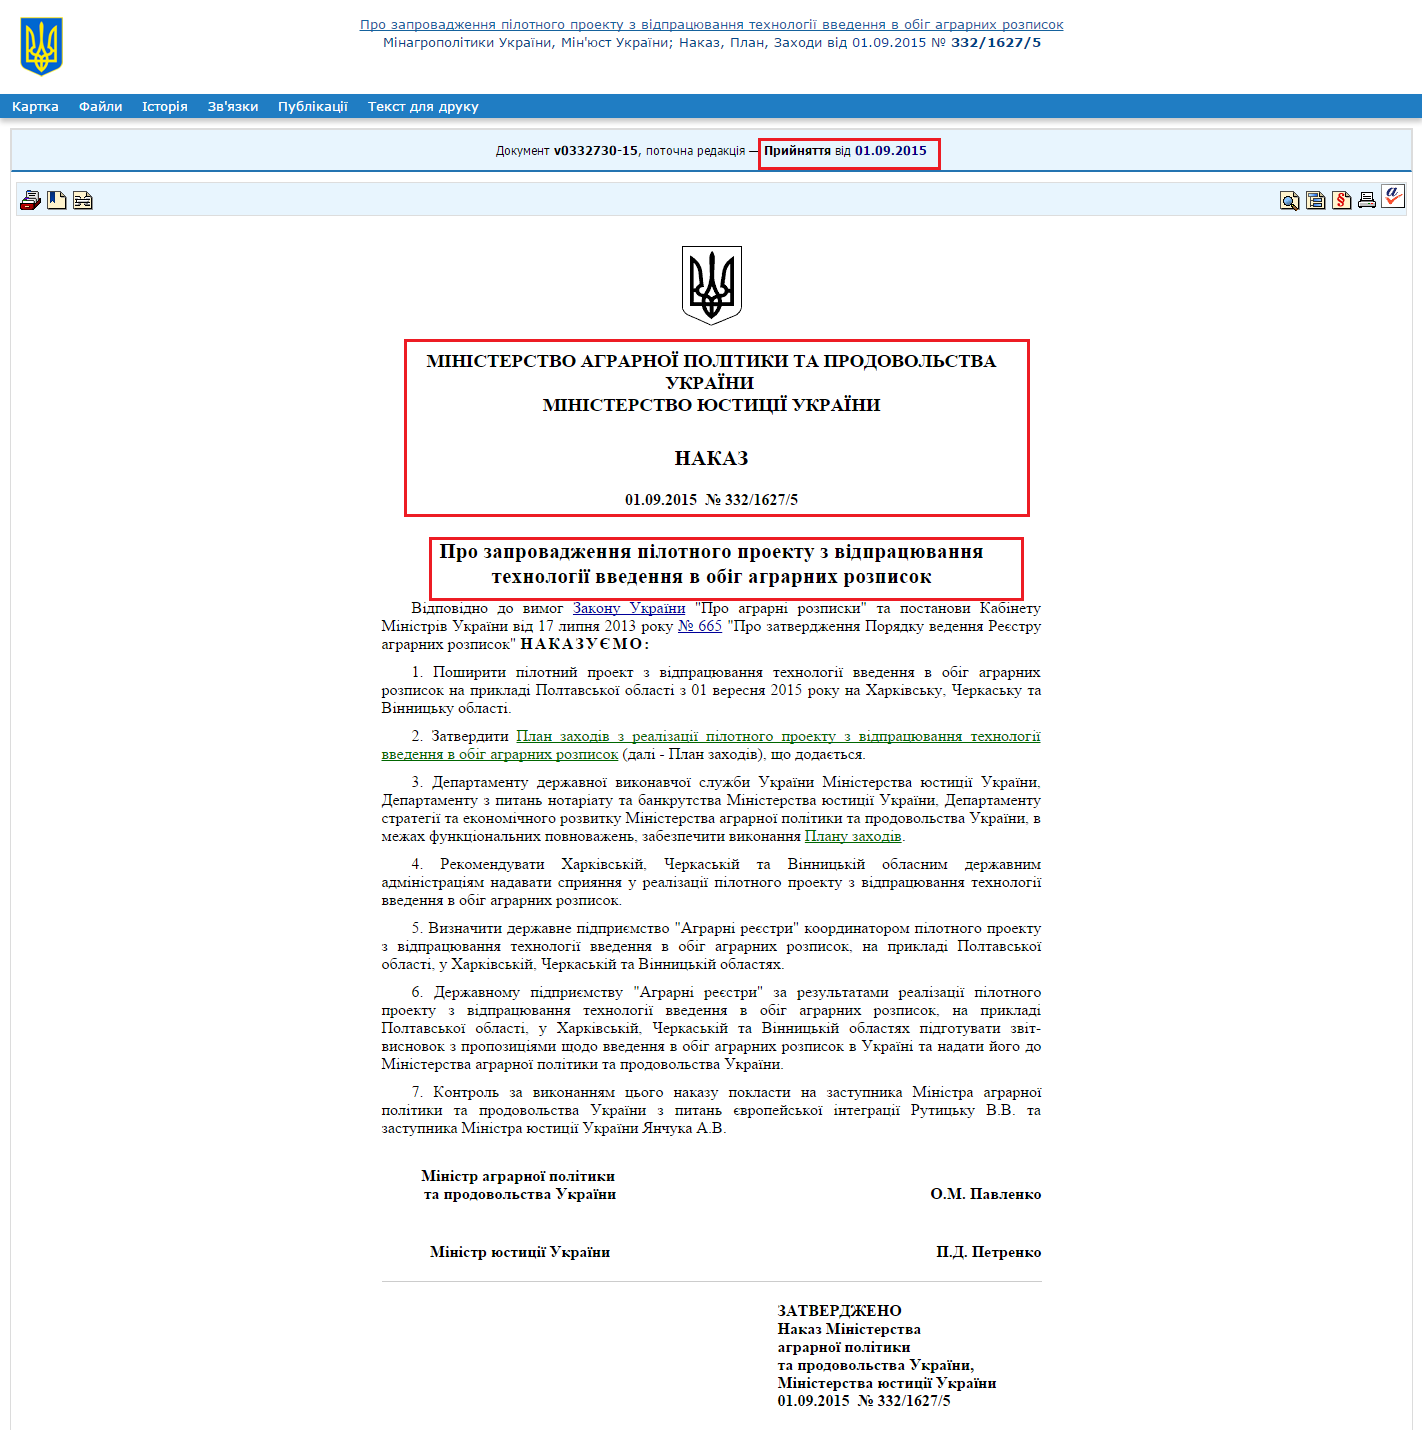 http://zakon5.rada.gov.ua/laws/show/v0332730-15